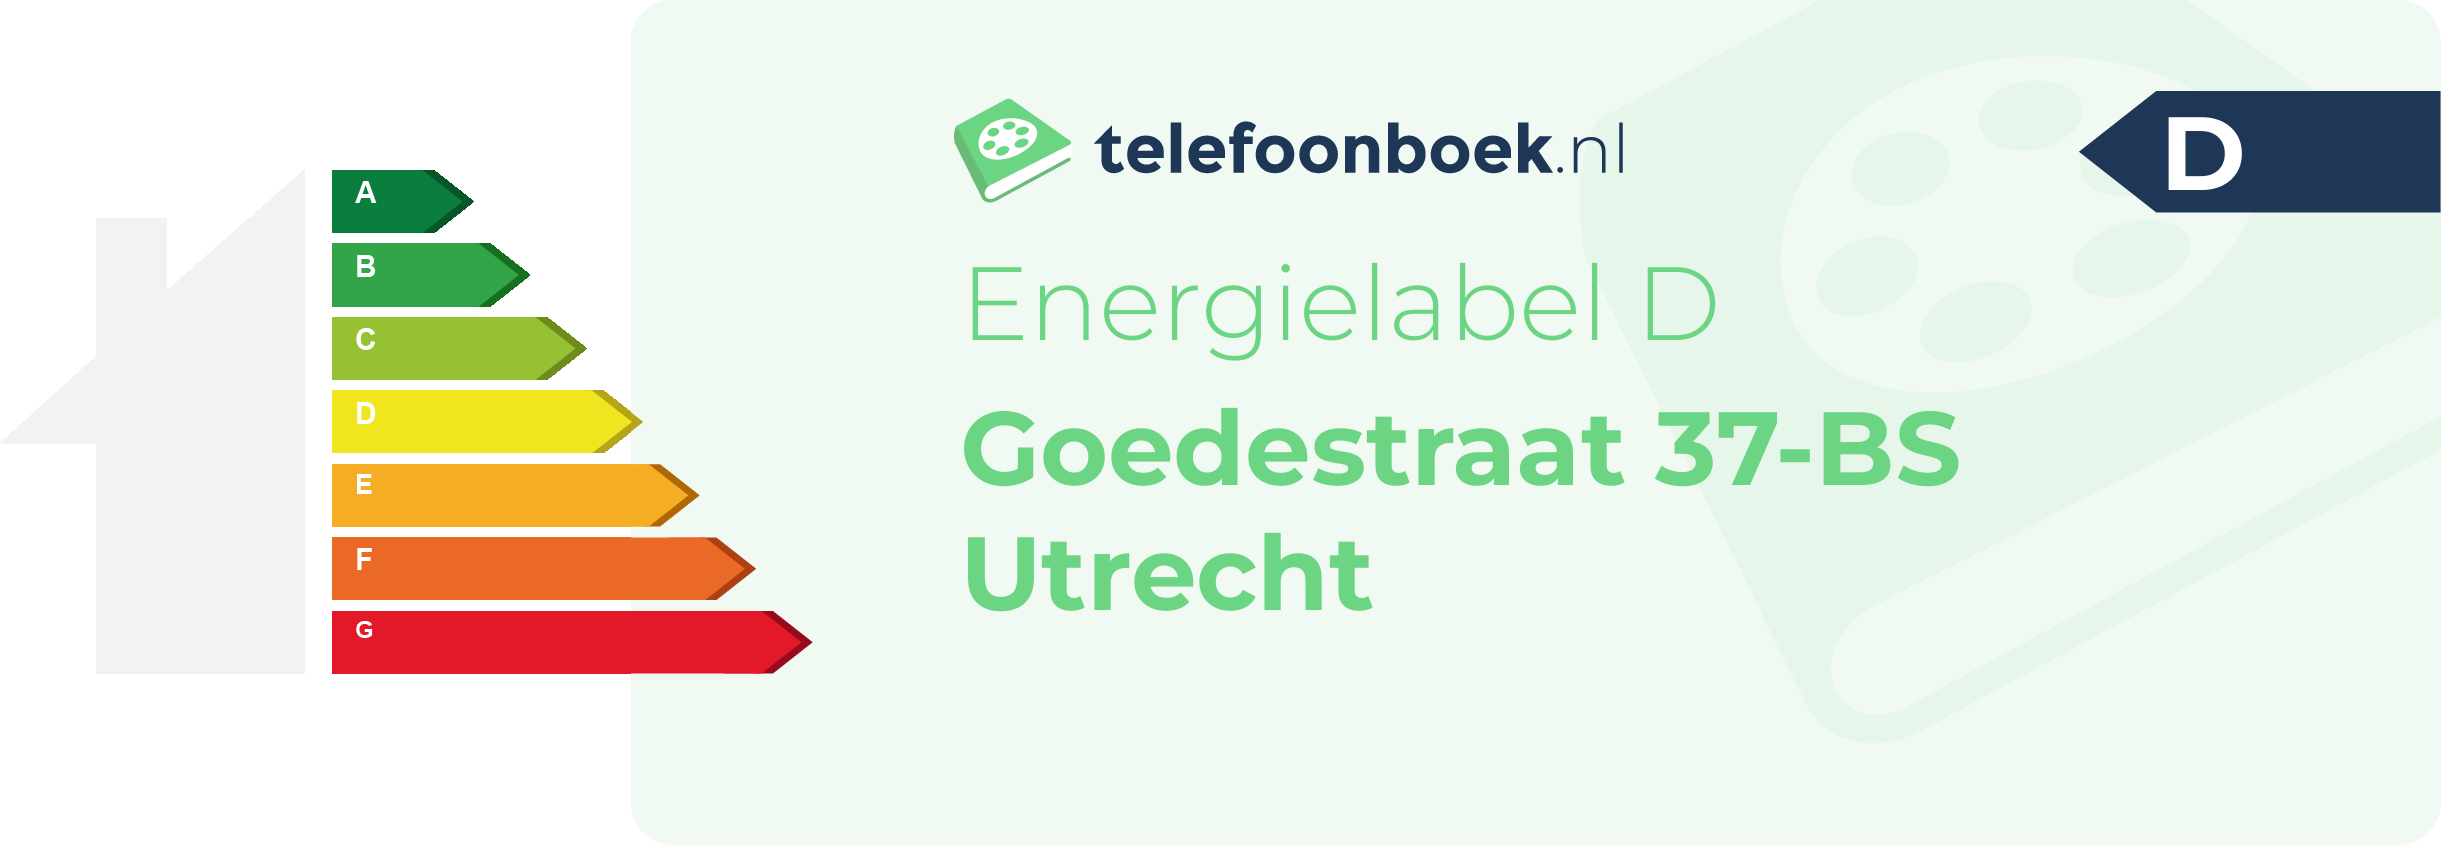 Energielabel Goedestraat 37-BS Utrecht